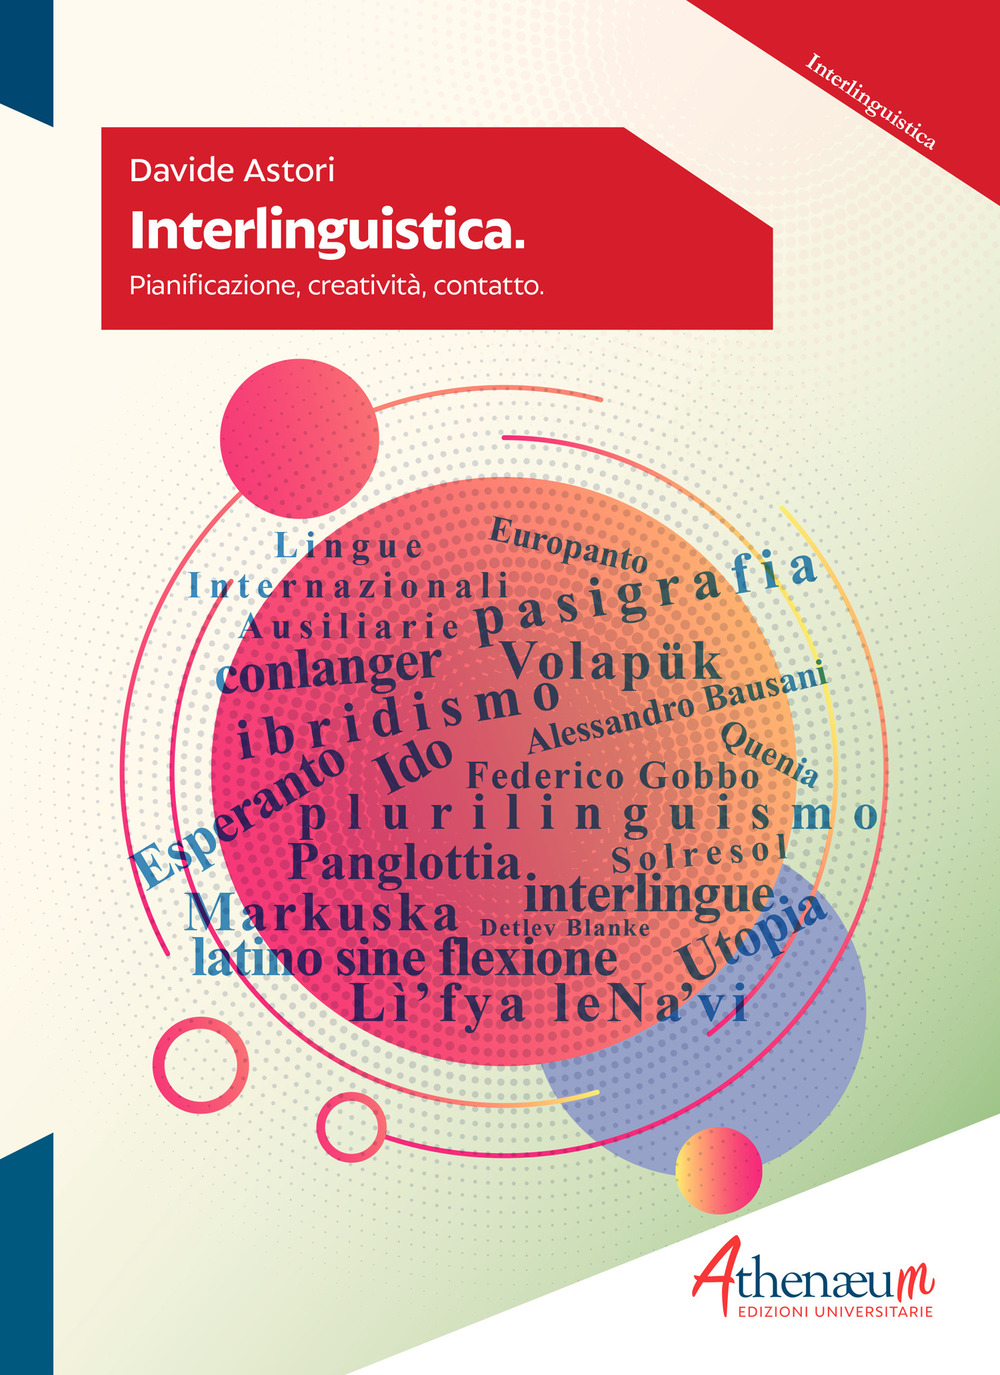 Libri Davide Astori - Interlinguistica. Pianificazione, Creativita, Contatto NUOVO SIGILLATO, EDIZIONE DEL 24/02/2020 SUBITO DISPONIBILE